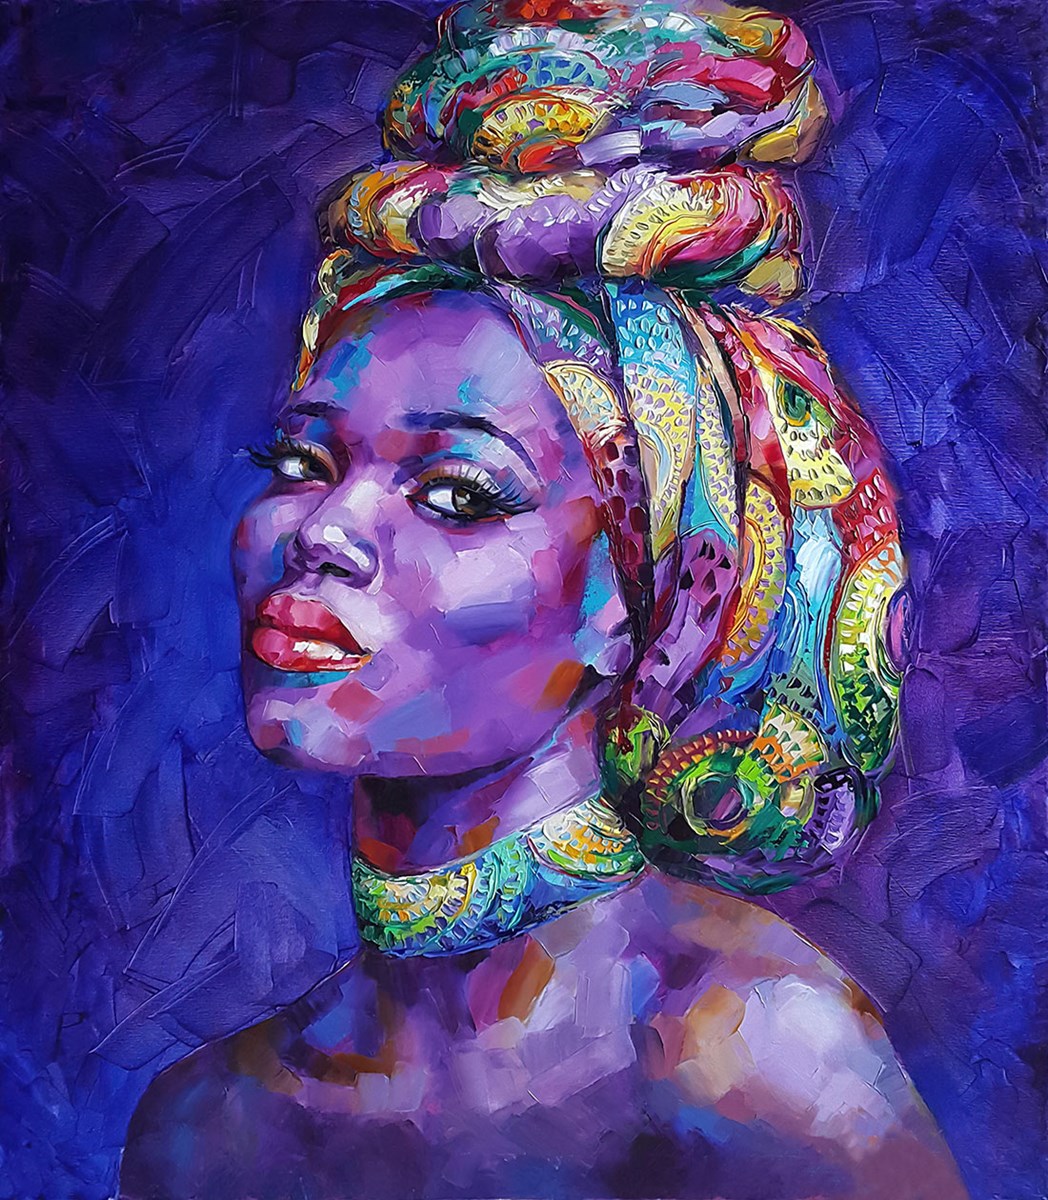 Afrikaanse vrouw canvas schilderij behang